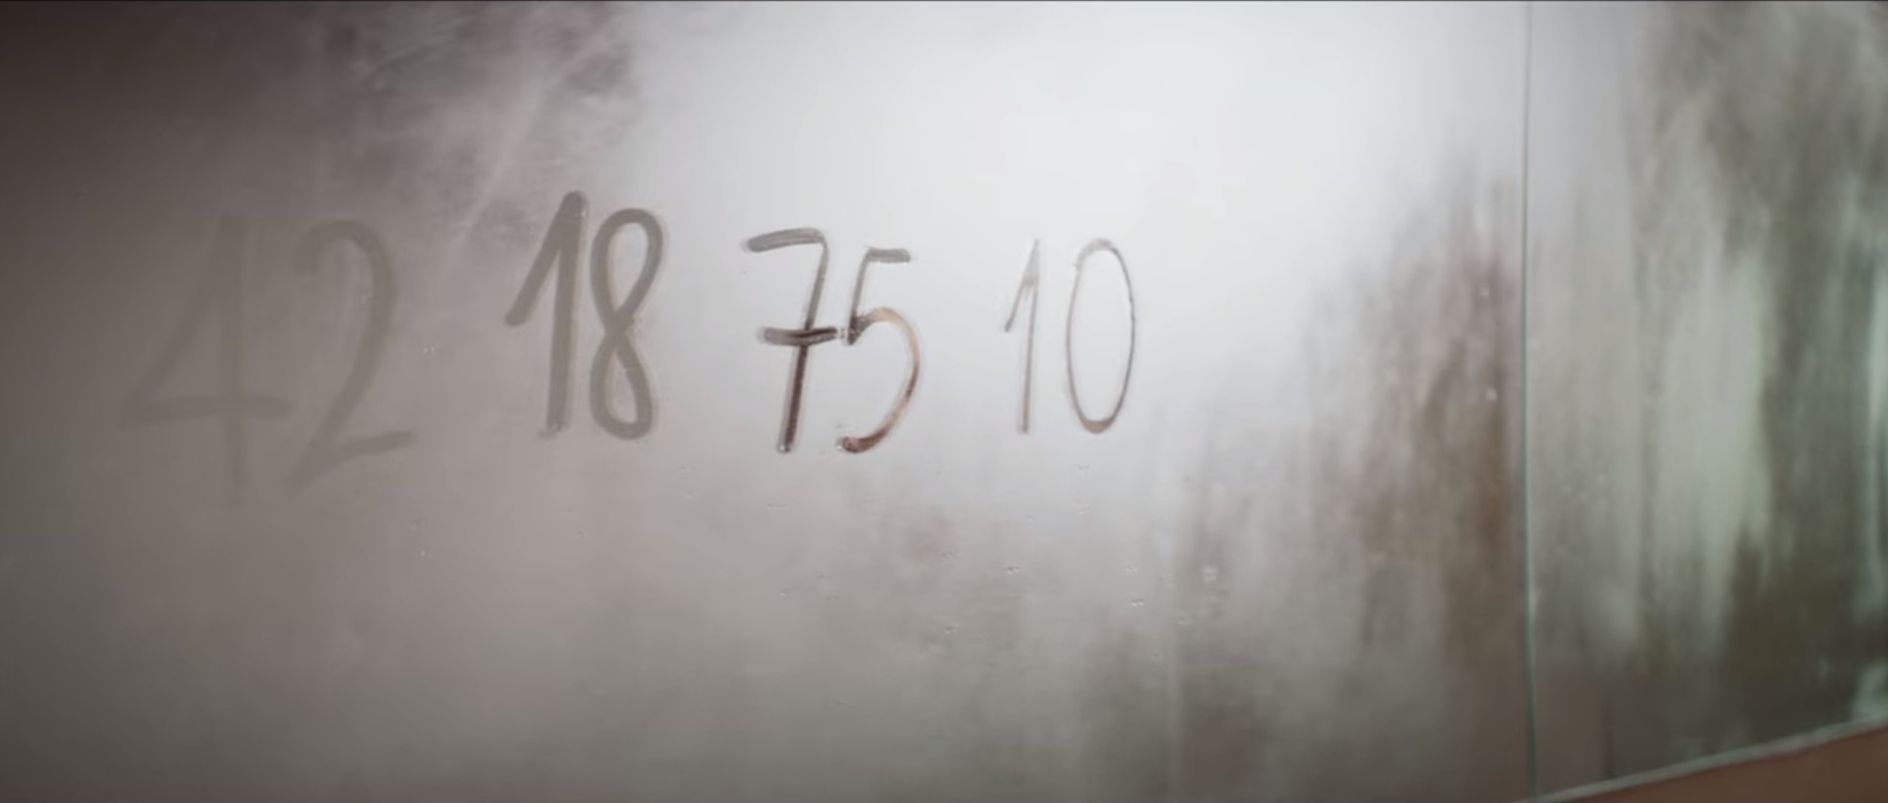 Numeri scritti allo specchio in Napoli Velata: 42, 18, 75 e 10